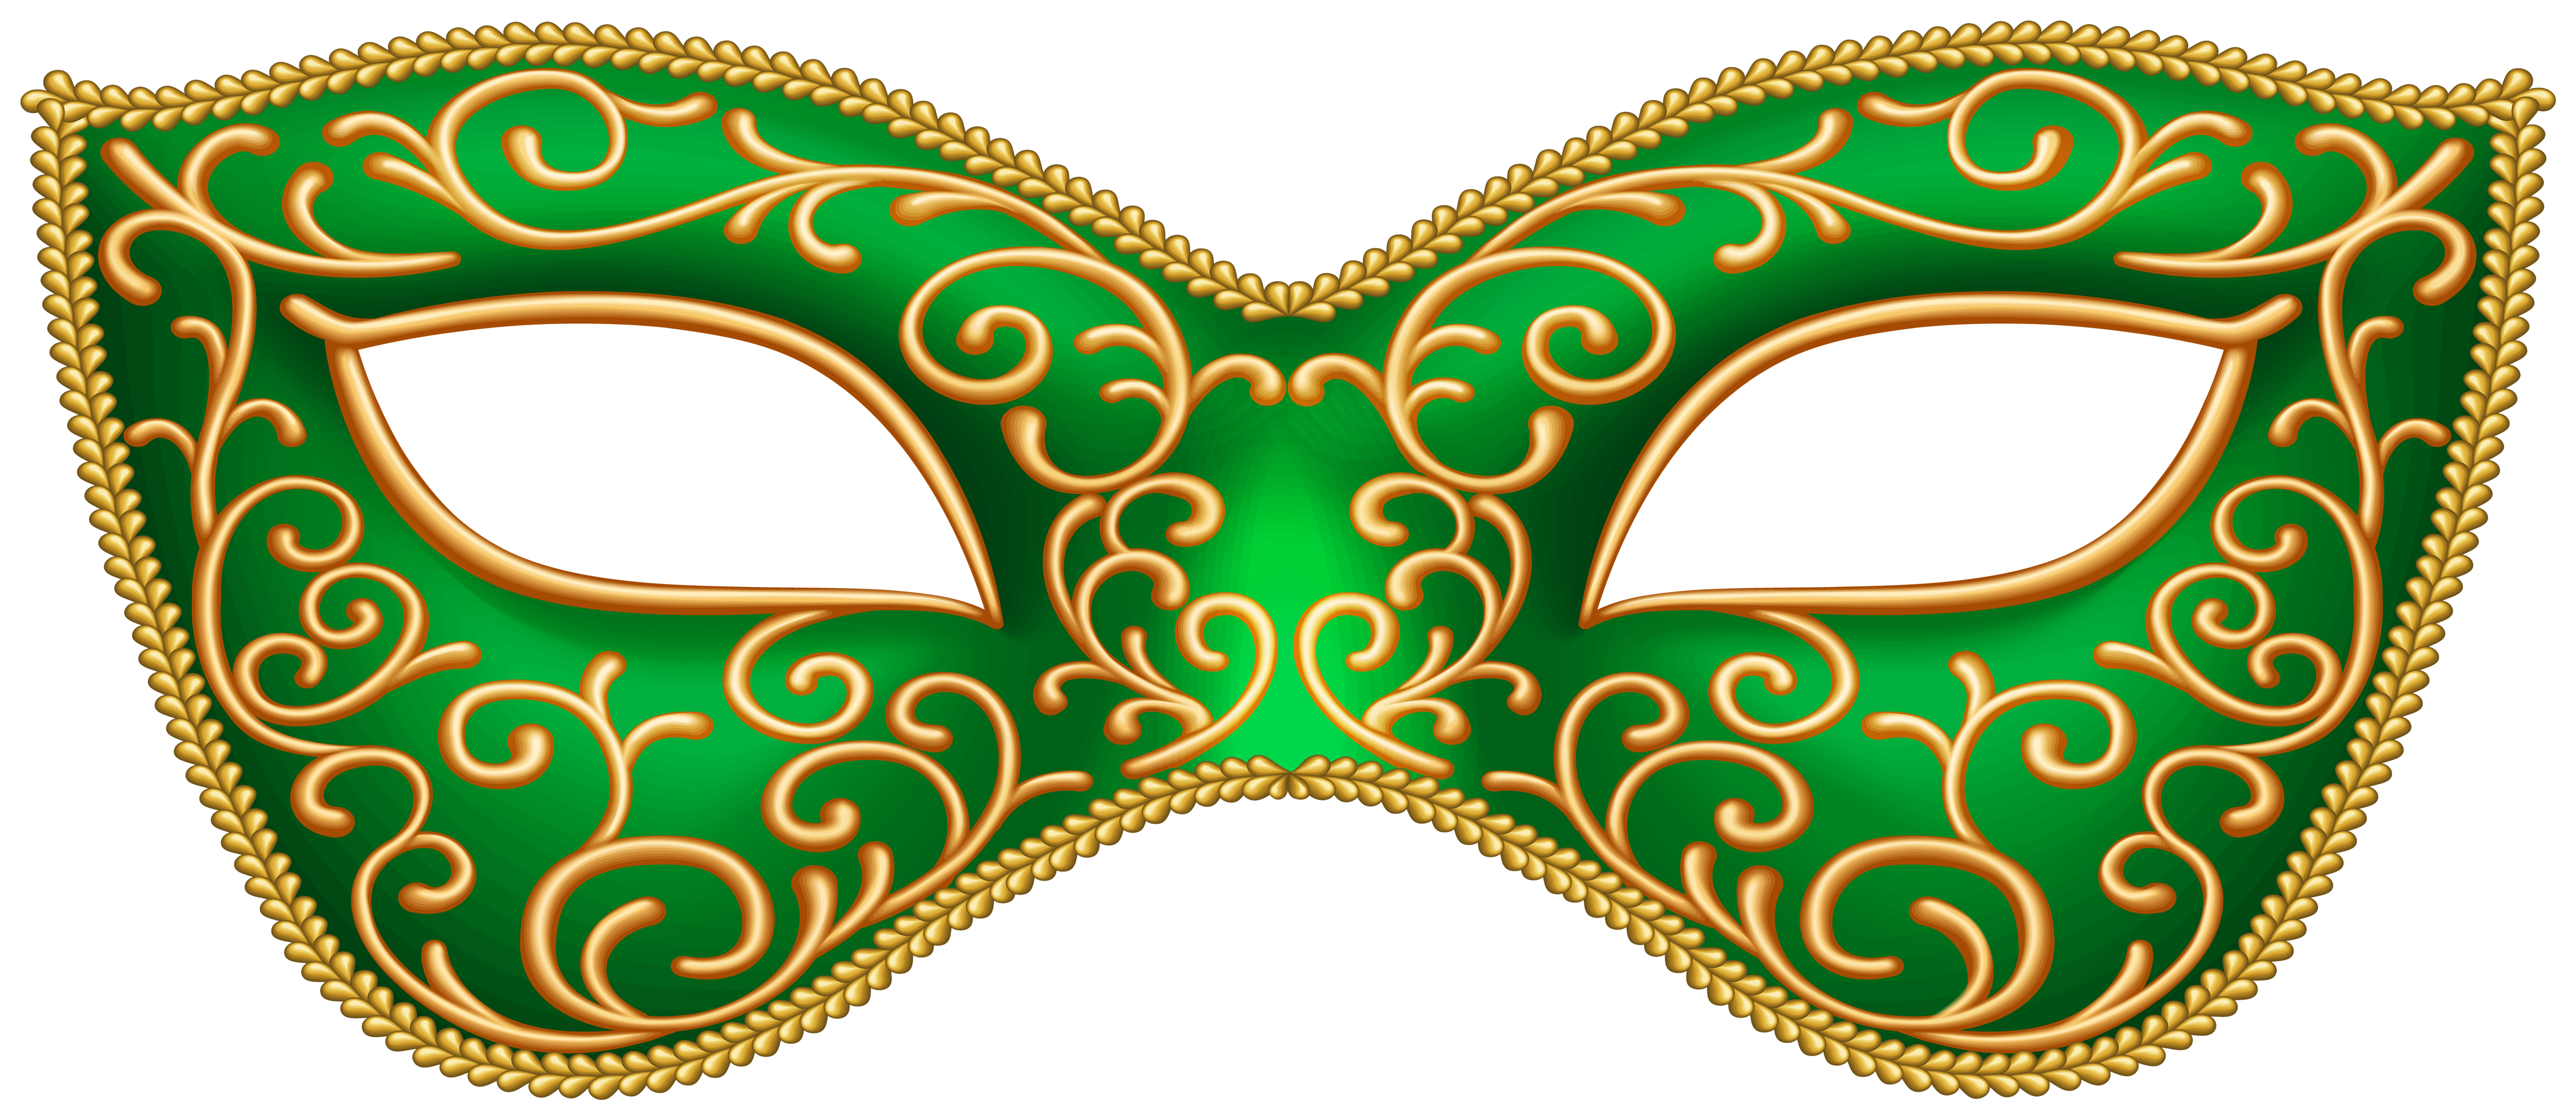 Green Carnival Mask Transparent Image.